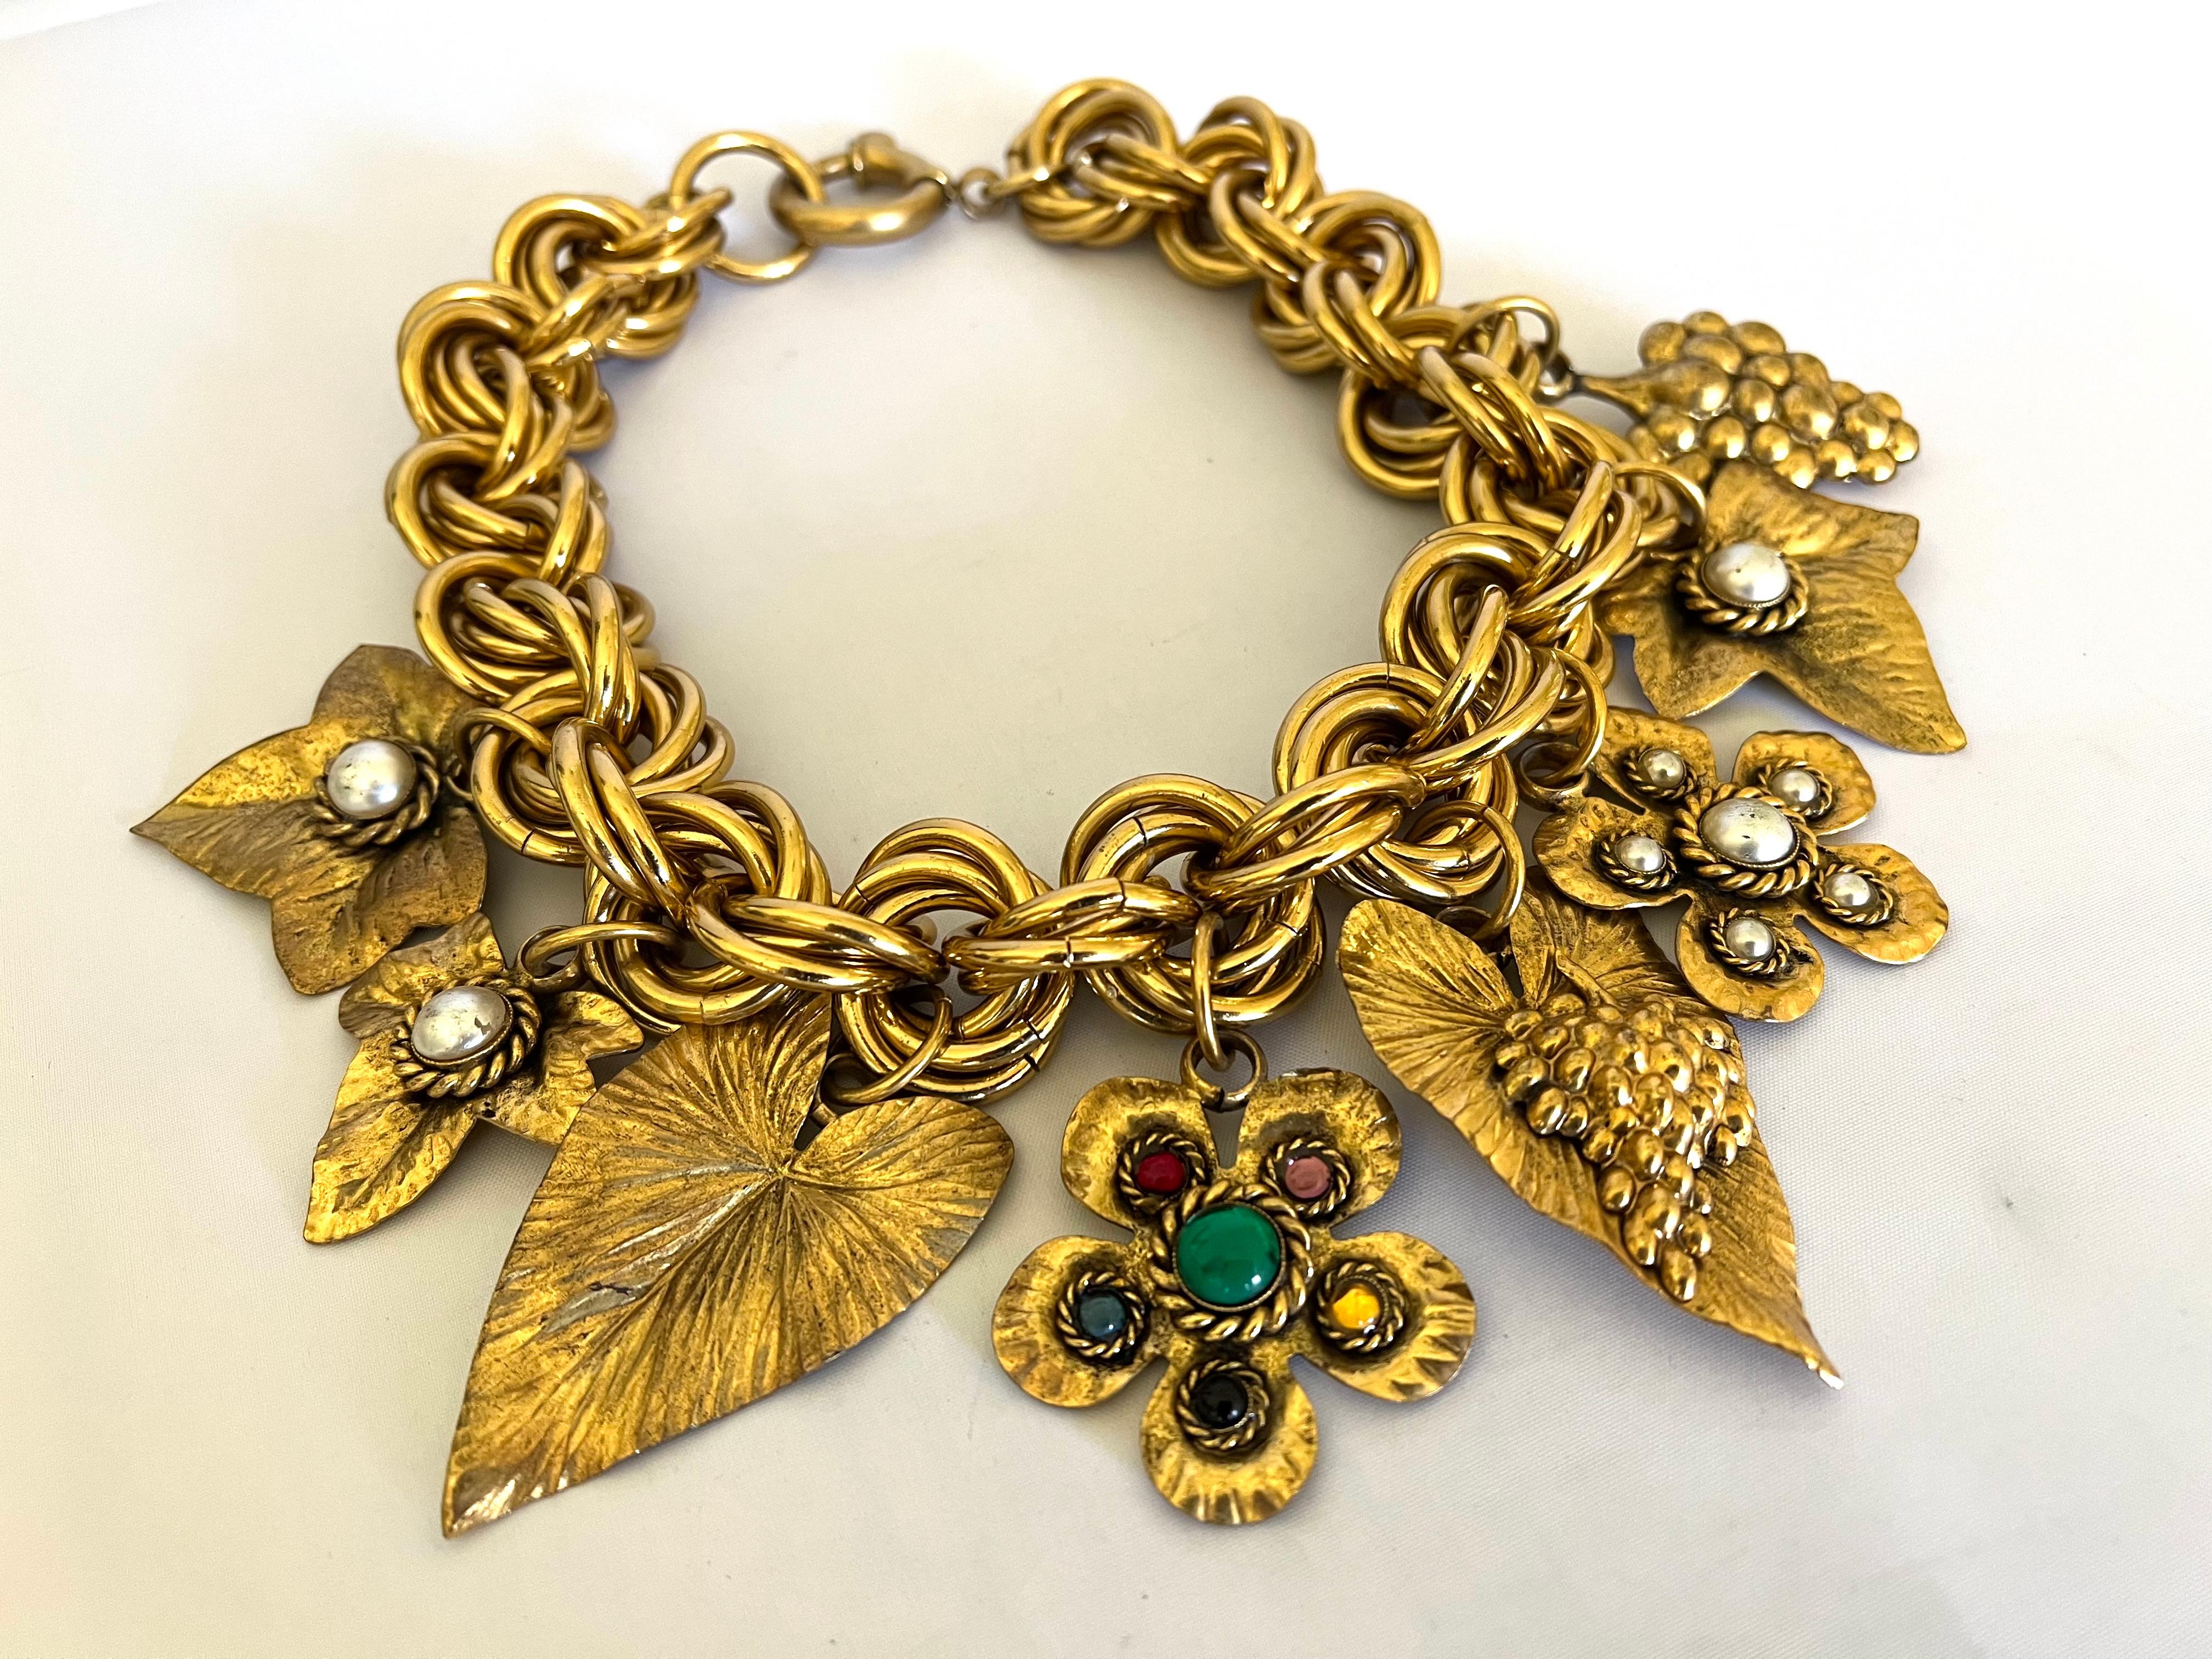 Vintage oversized charm necklace comprised of gilt metal 